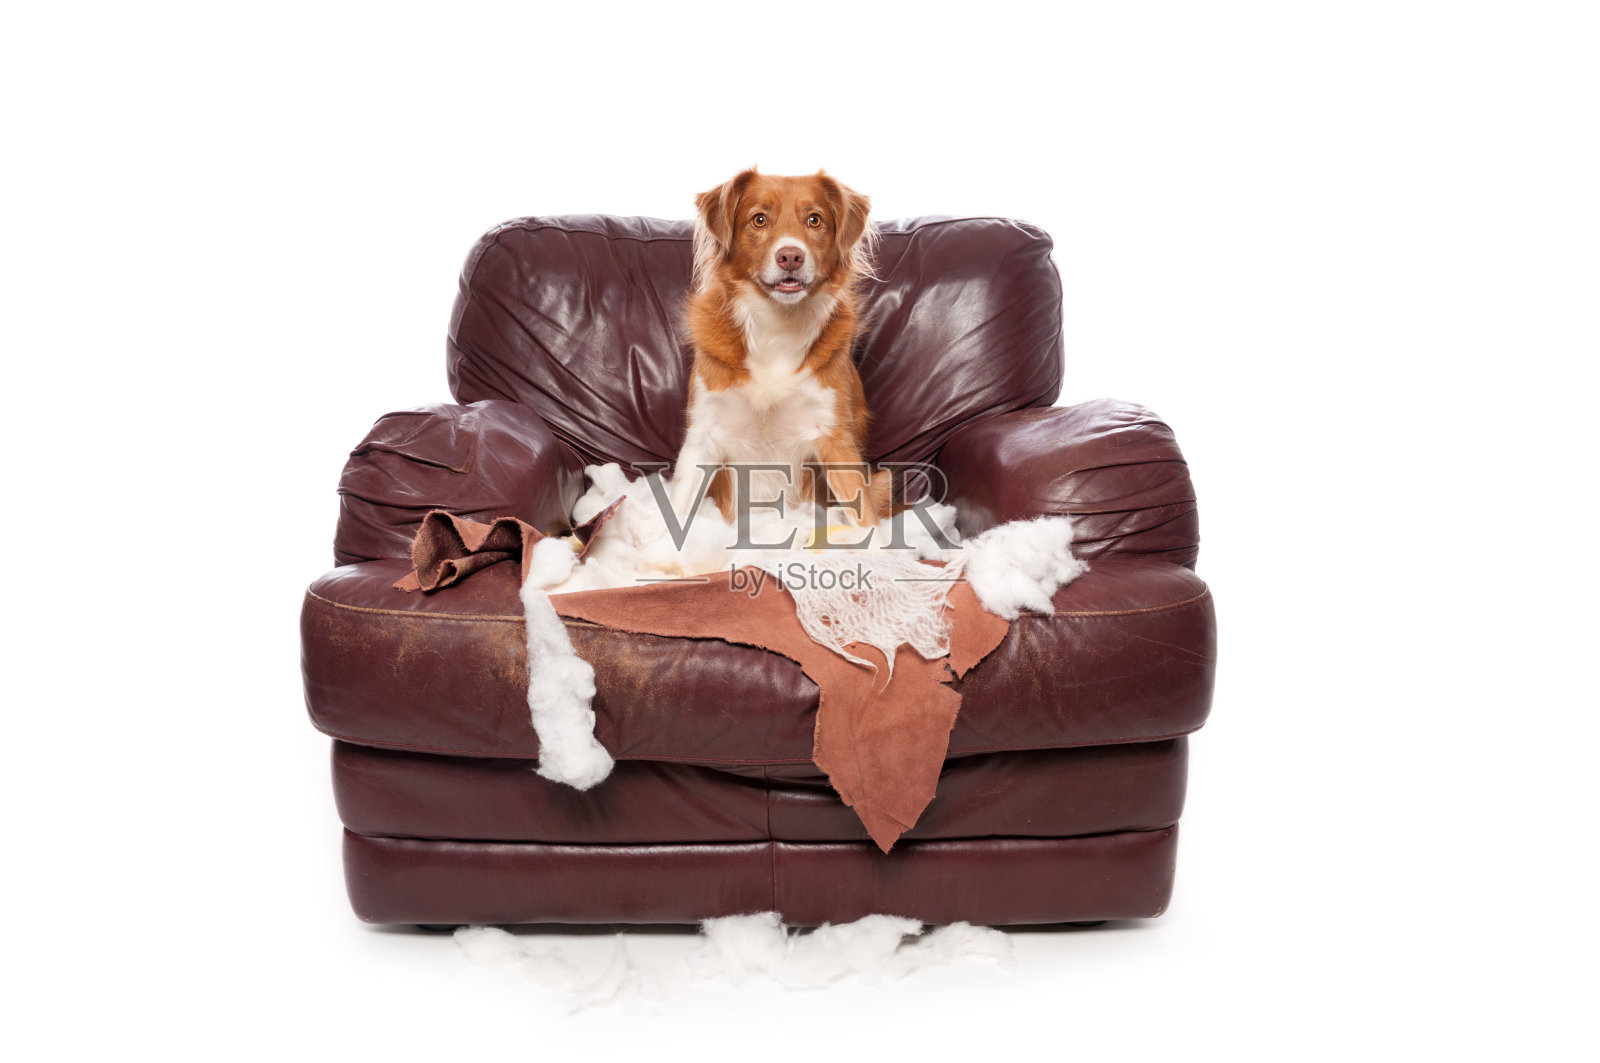 顽皮的新斯科舍寻回犬坐在一个被咀嚼过的椅子上照片摄影图片